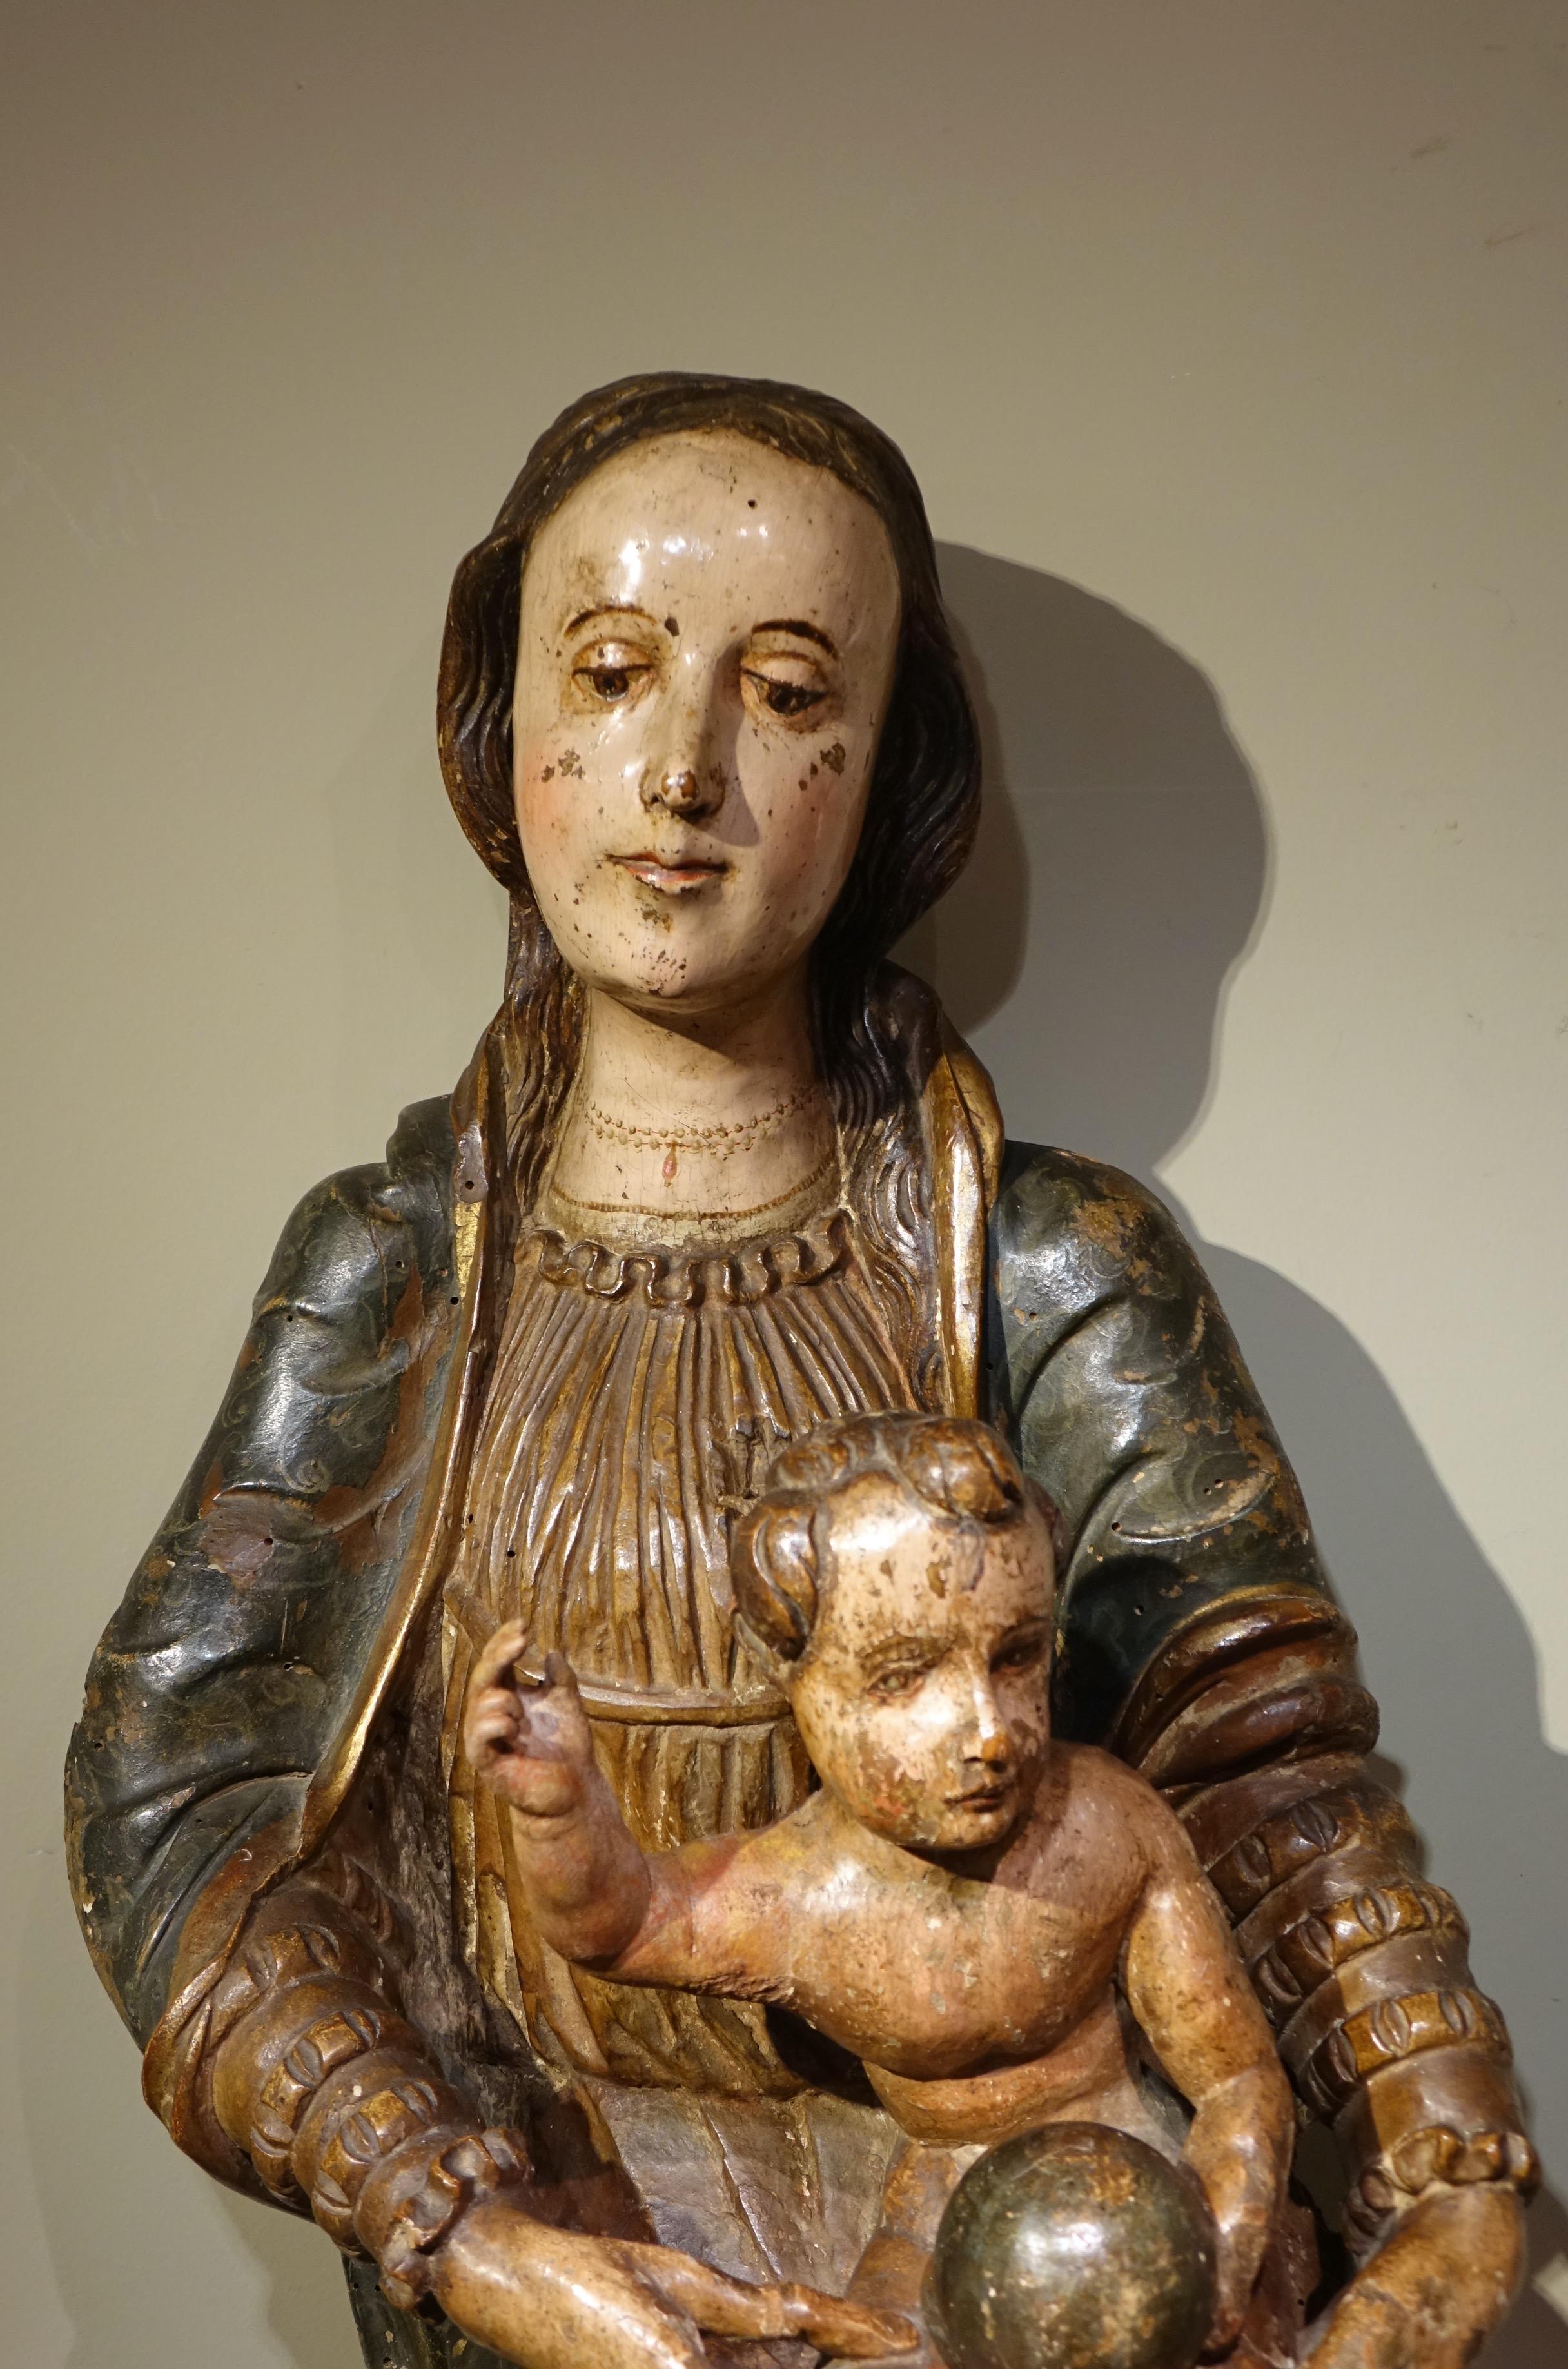 Grande Vierge à l'Enfant en bois peint et sculpté, représentant la Vierge et l'Enfant portant le globe terrestre.
Le thème de la Vierge à l'enfant est le plus représenté dans tout l'art chrétien, alors que l'enfance de Jésus est presque totalement